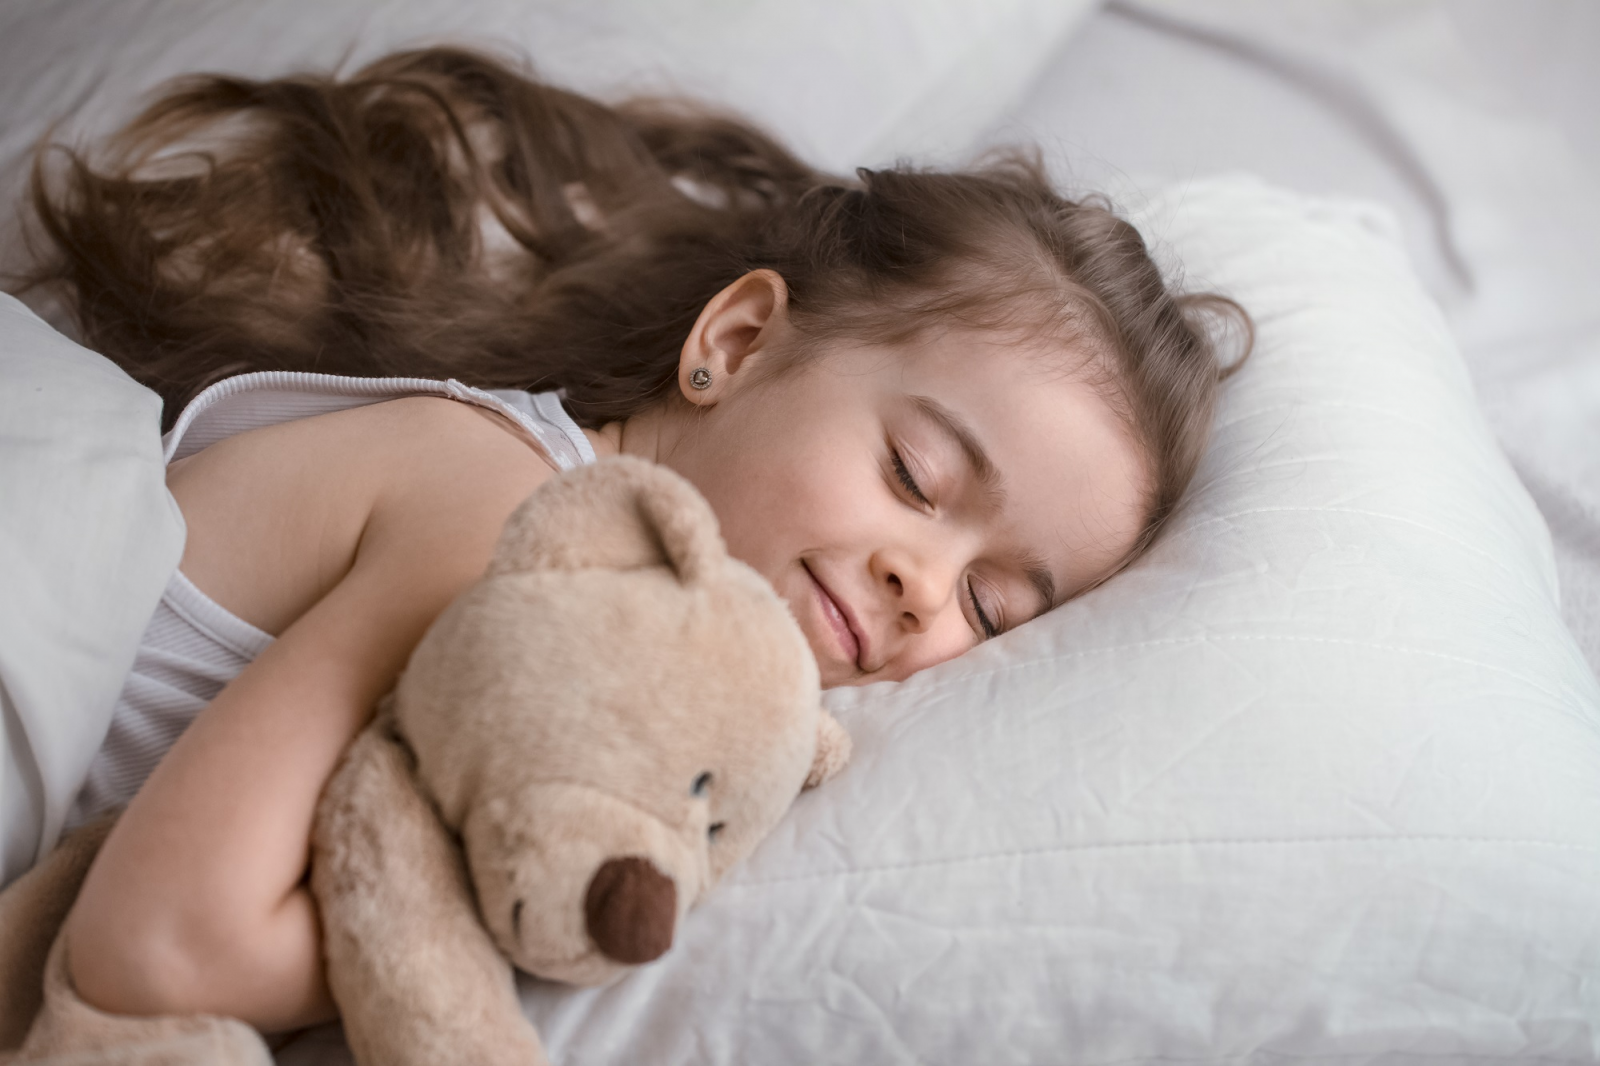 Tập cho trẻ thói quen ngủ đúng giờ, đủ giấc